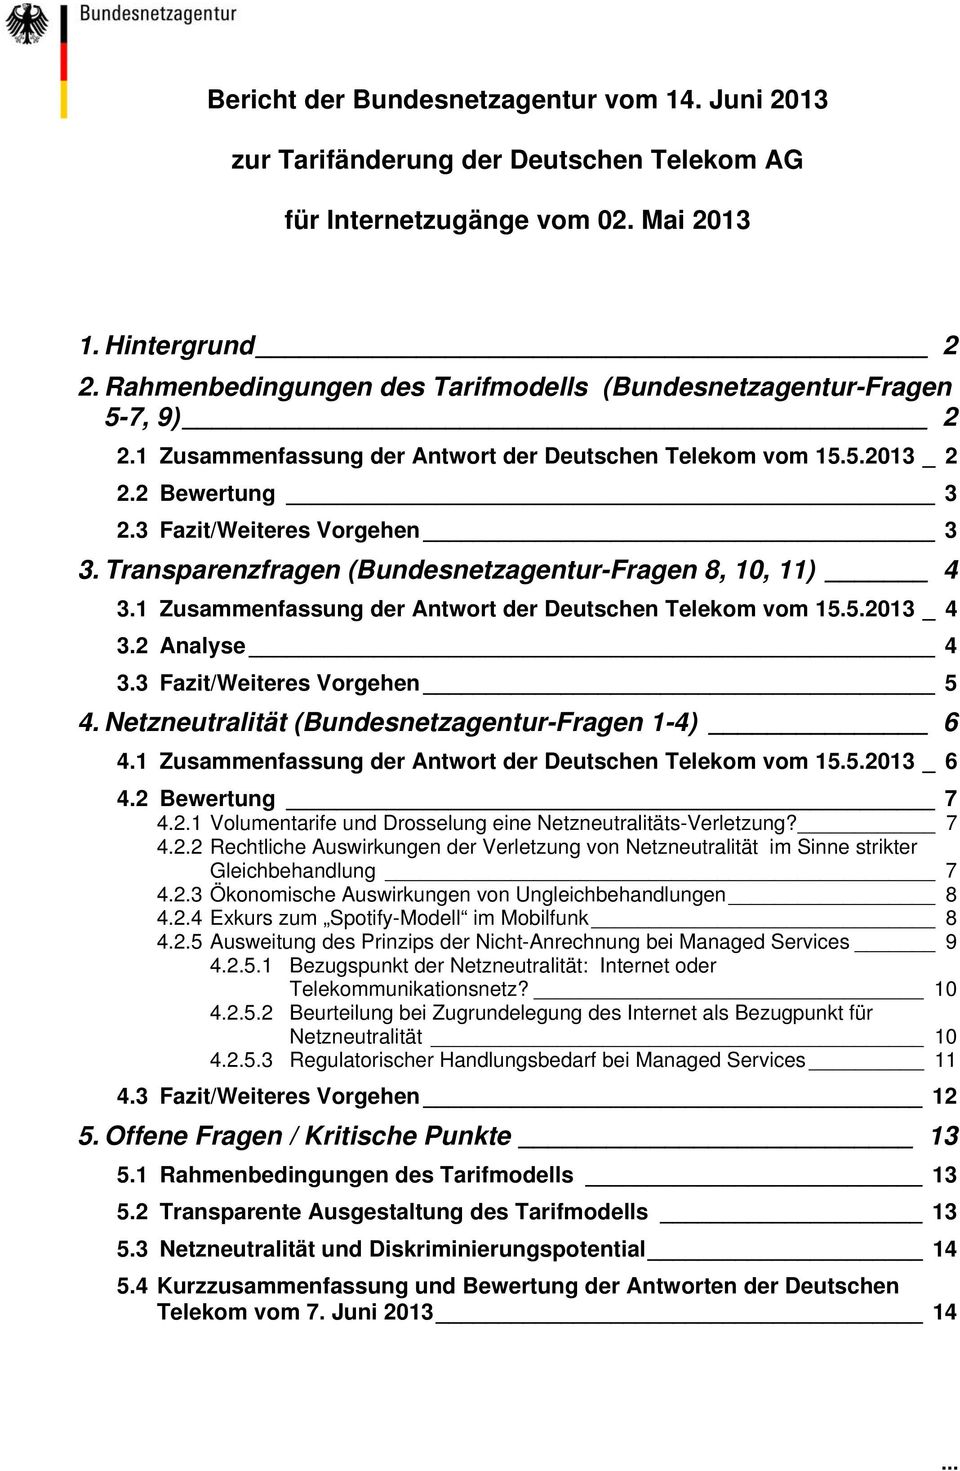 Transparenzfragen (Bundesnetzagentur-Fragen 8, 10, 11) 4 3.1 Zusammenfassung der Antwort der Deutschen Telekom vom 15.5.2013 _ 4 3.2 Analyse 4 3.3 Fazit/Weiteres Vorgehen 5 4.